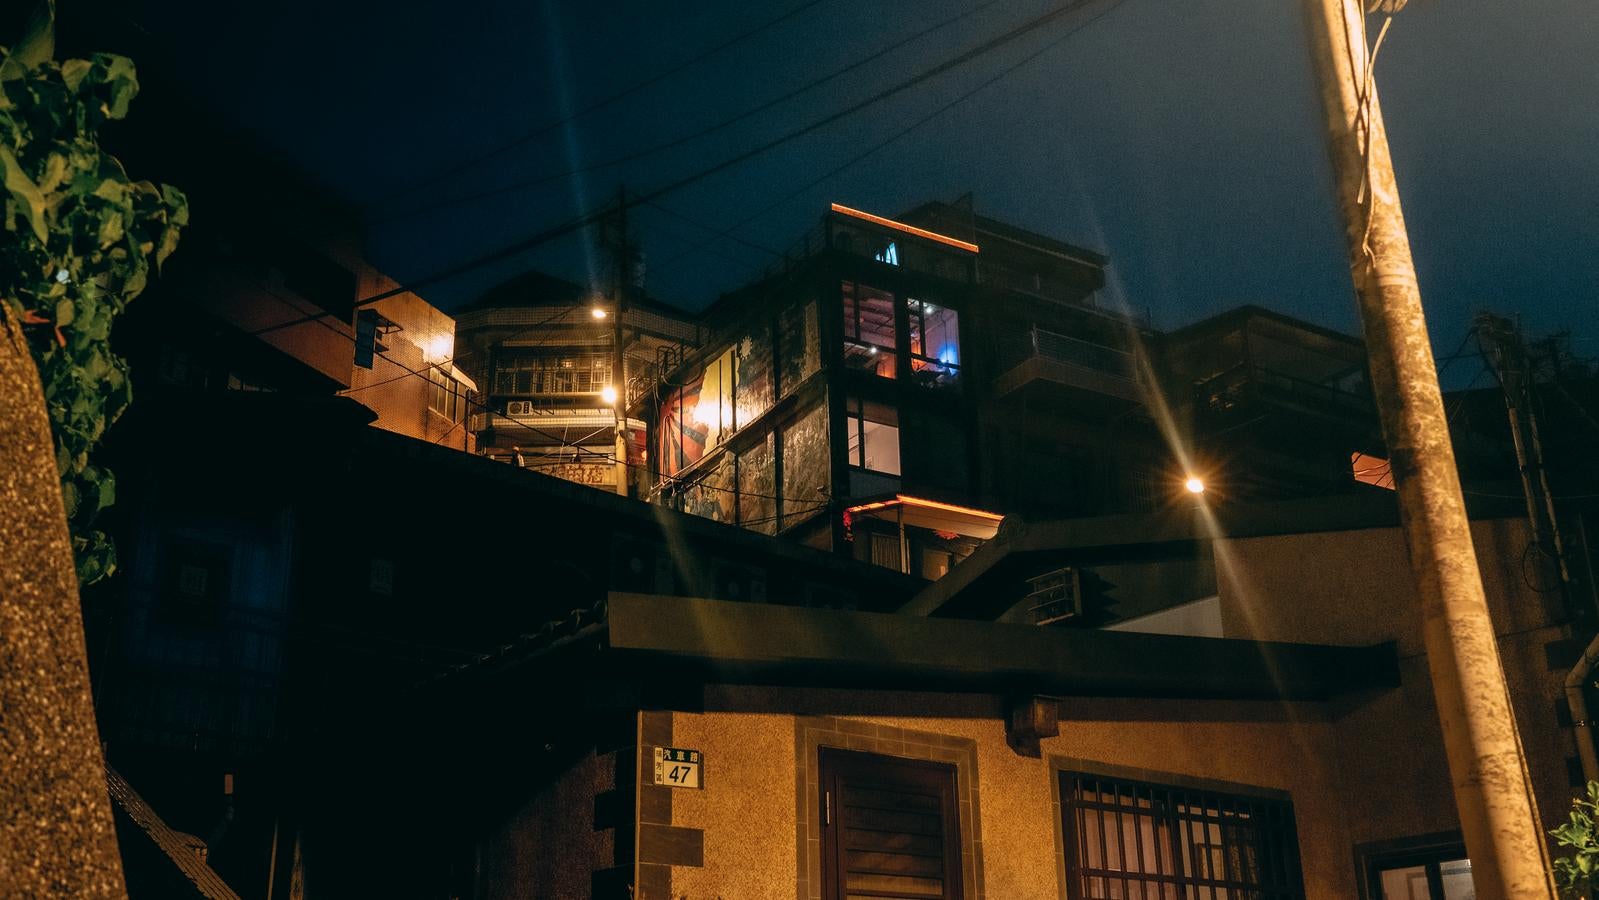 「九份の夜を彩る窓の灯りと街灯」の写真